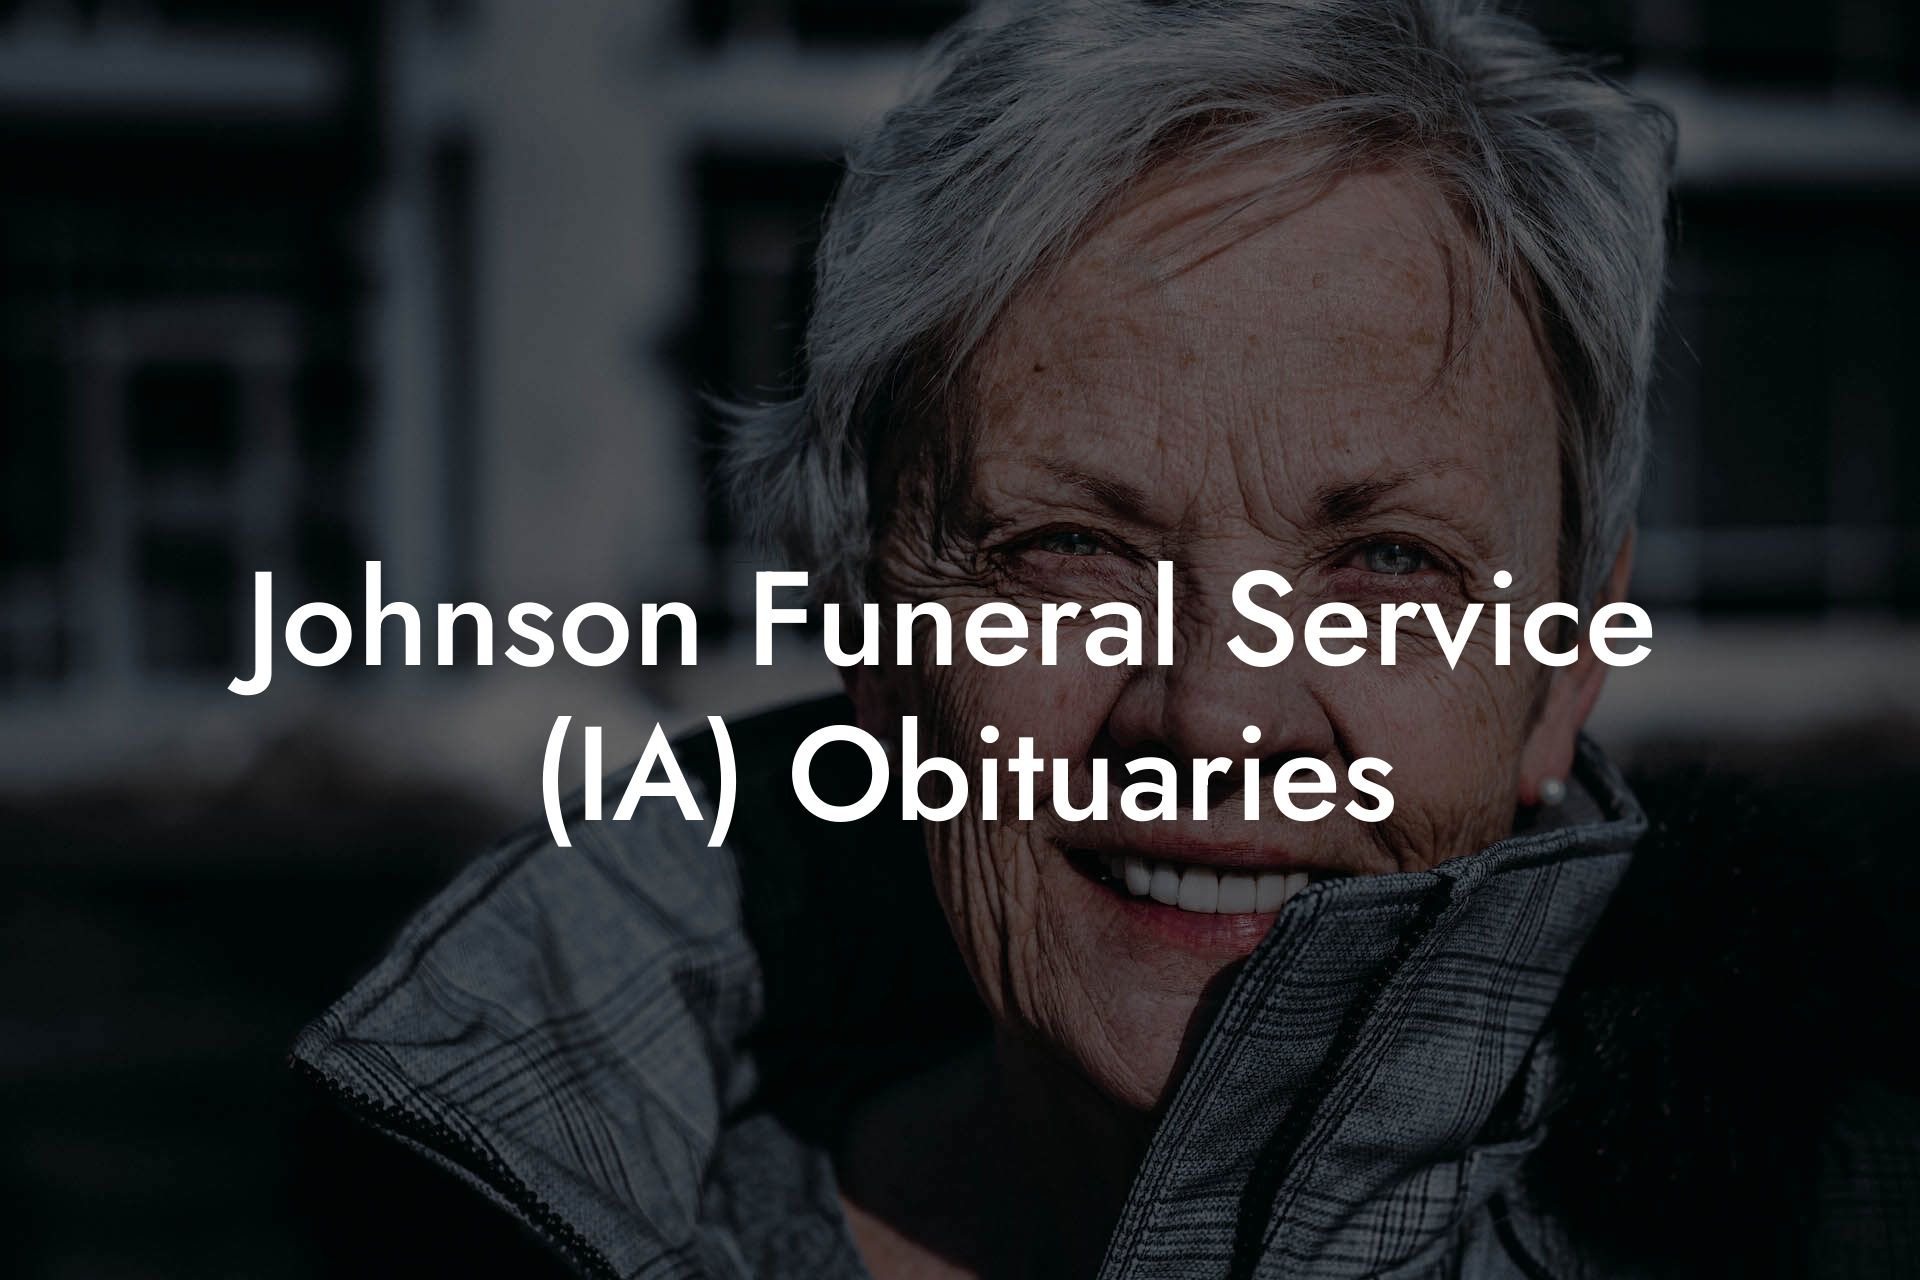 Johnson Funeral Service (IA) Obituaries